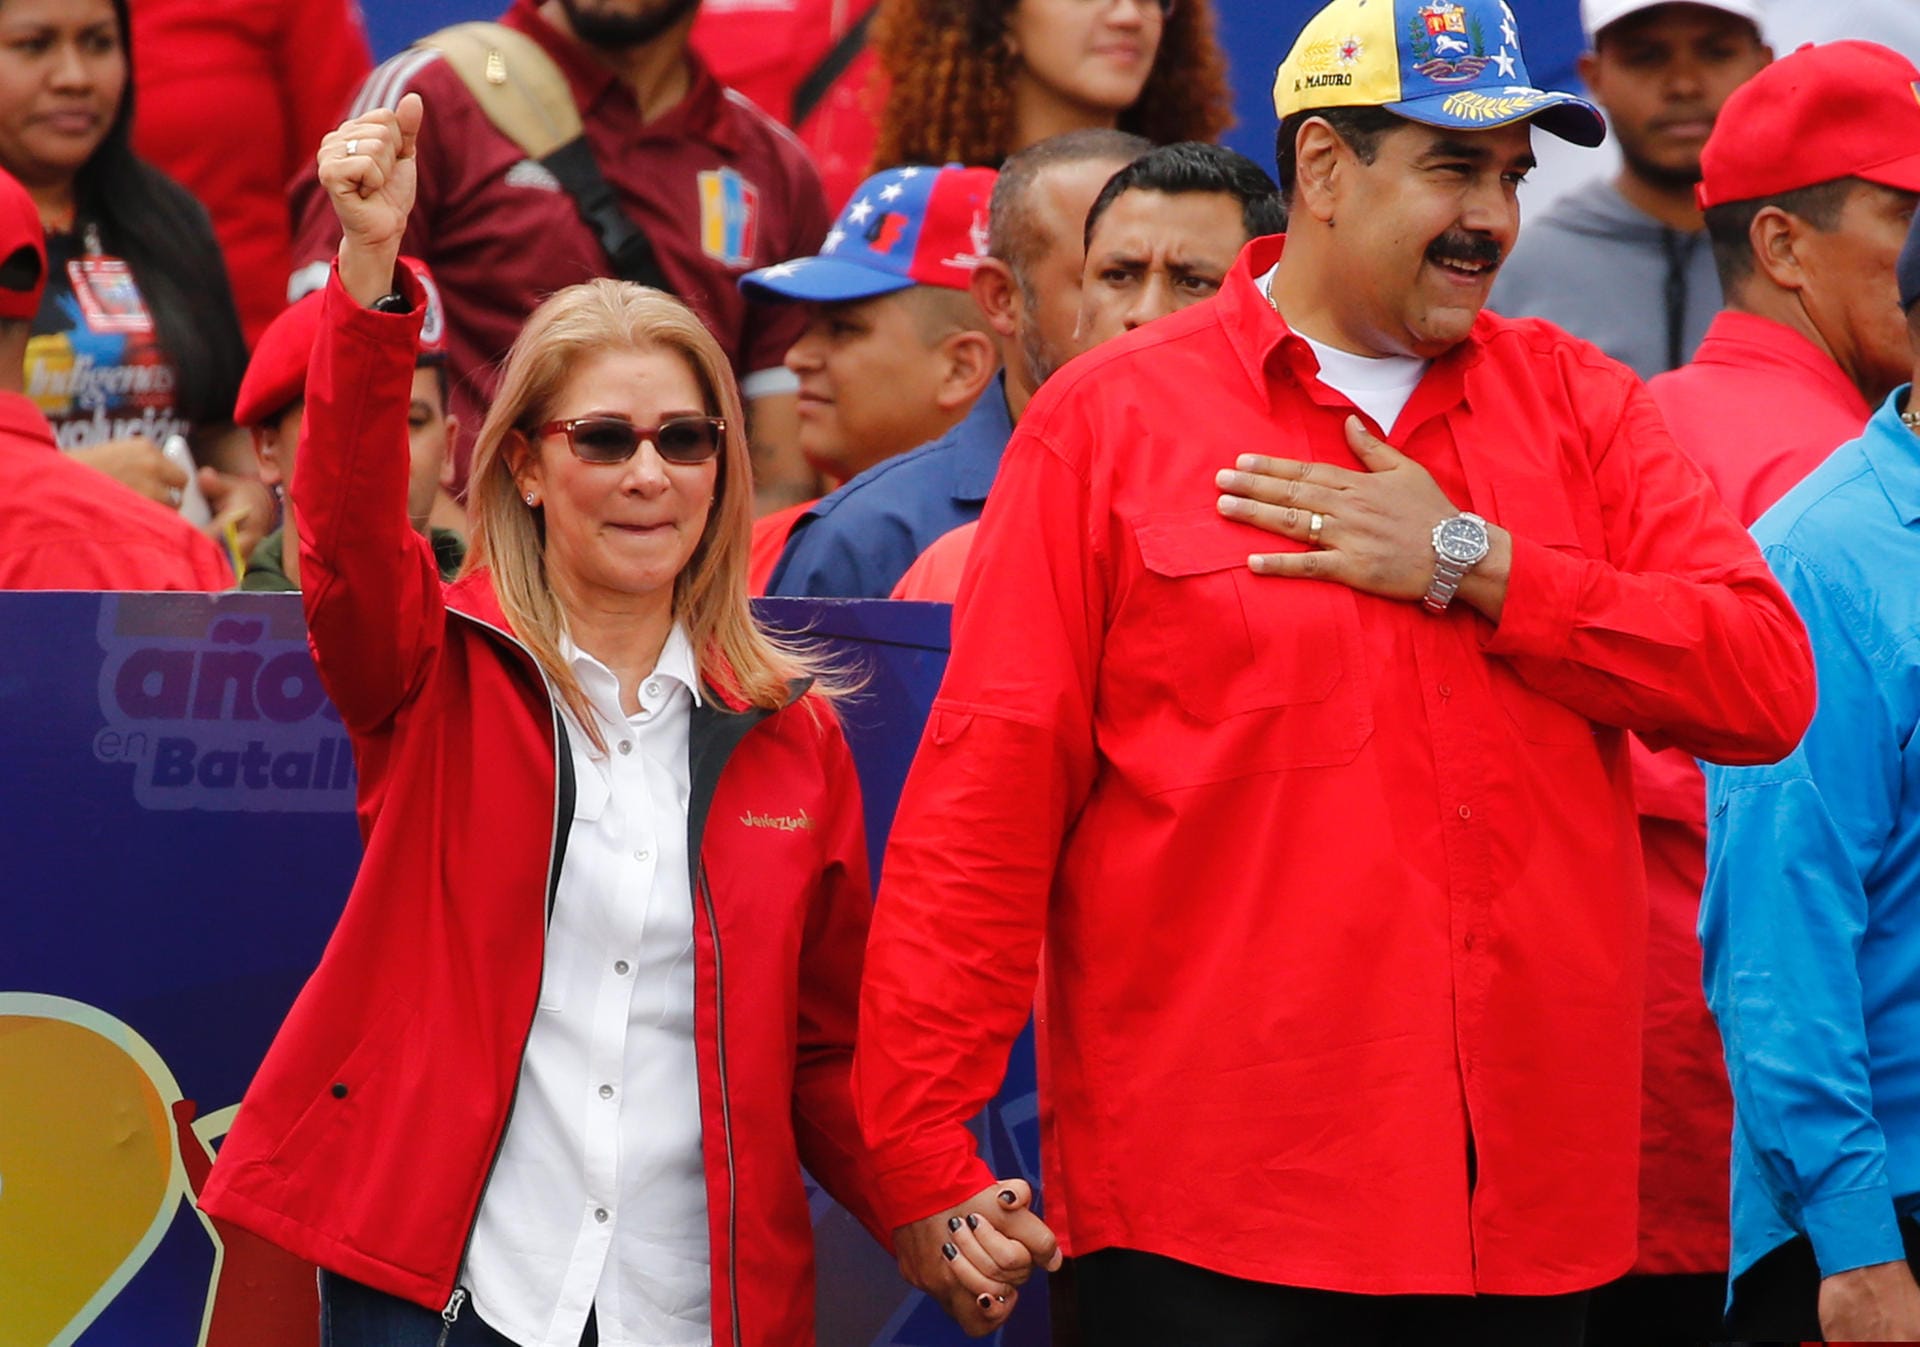 Nicolas Maduro, Cilia Flores